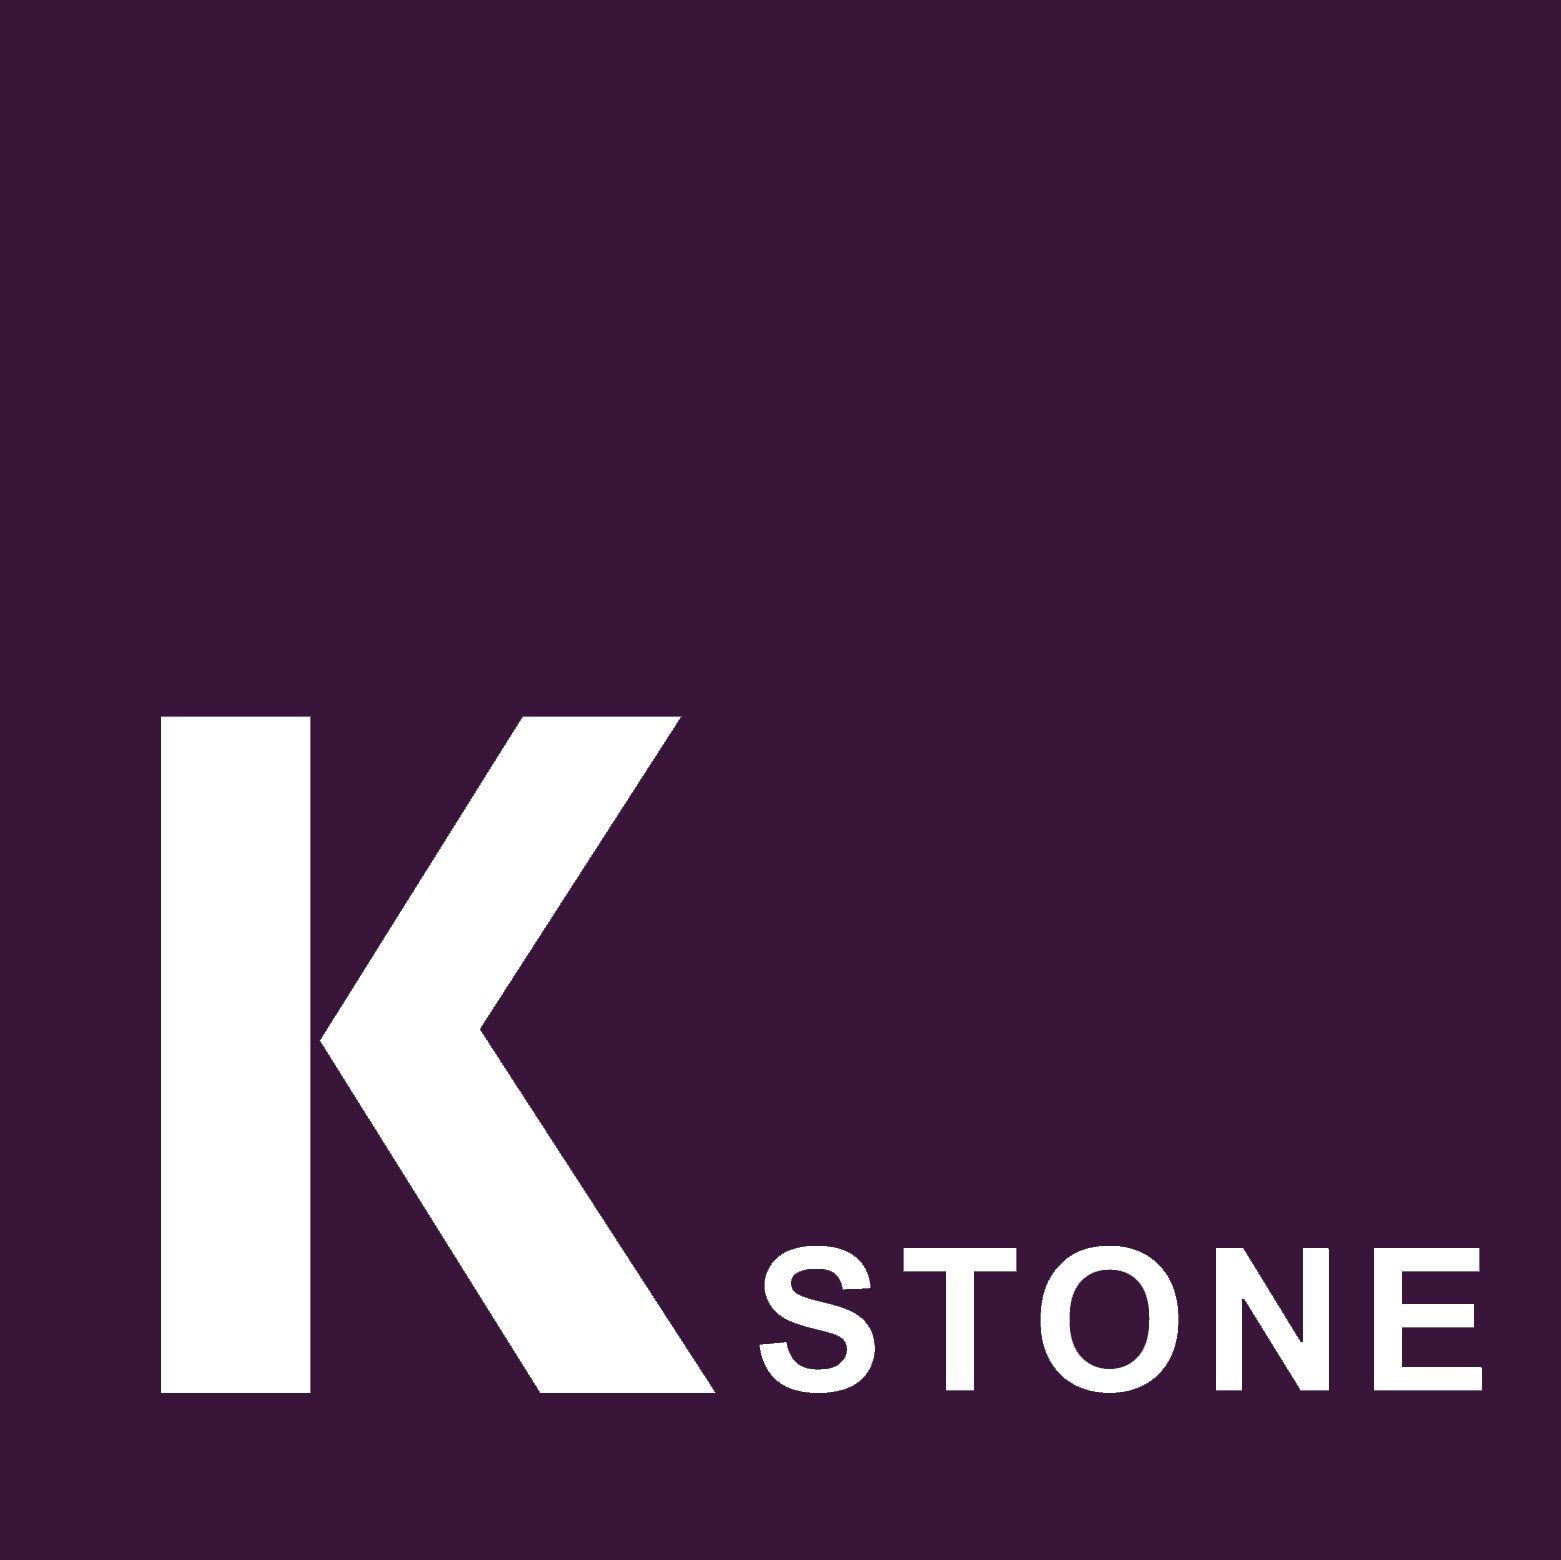 K Stone